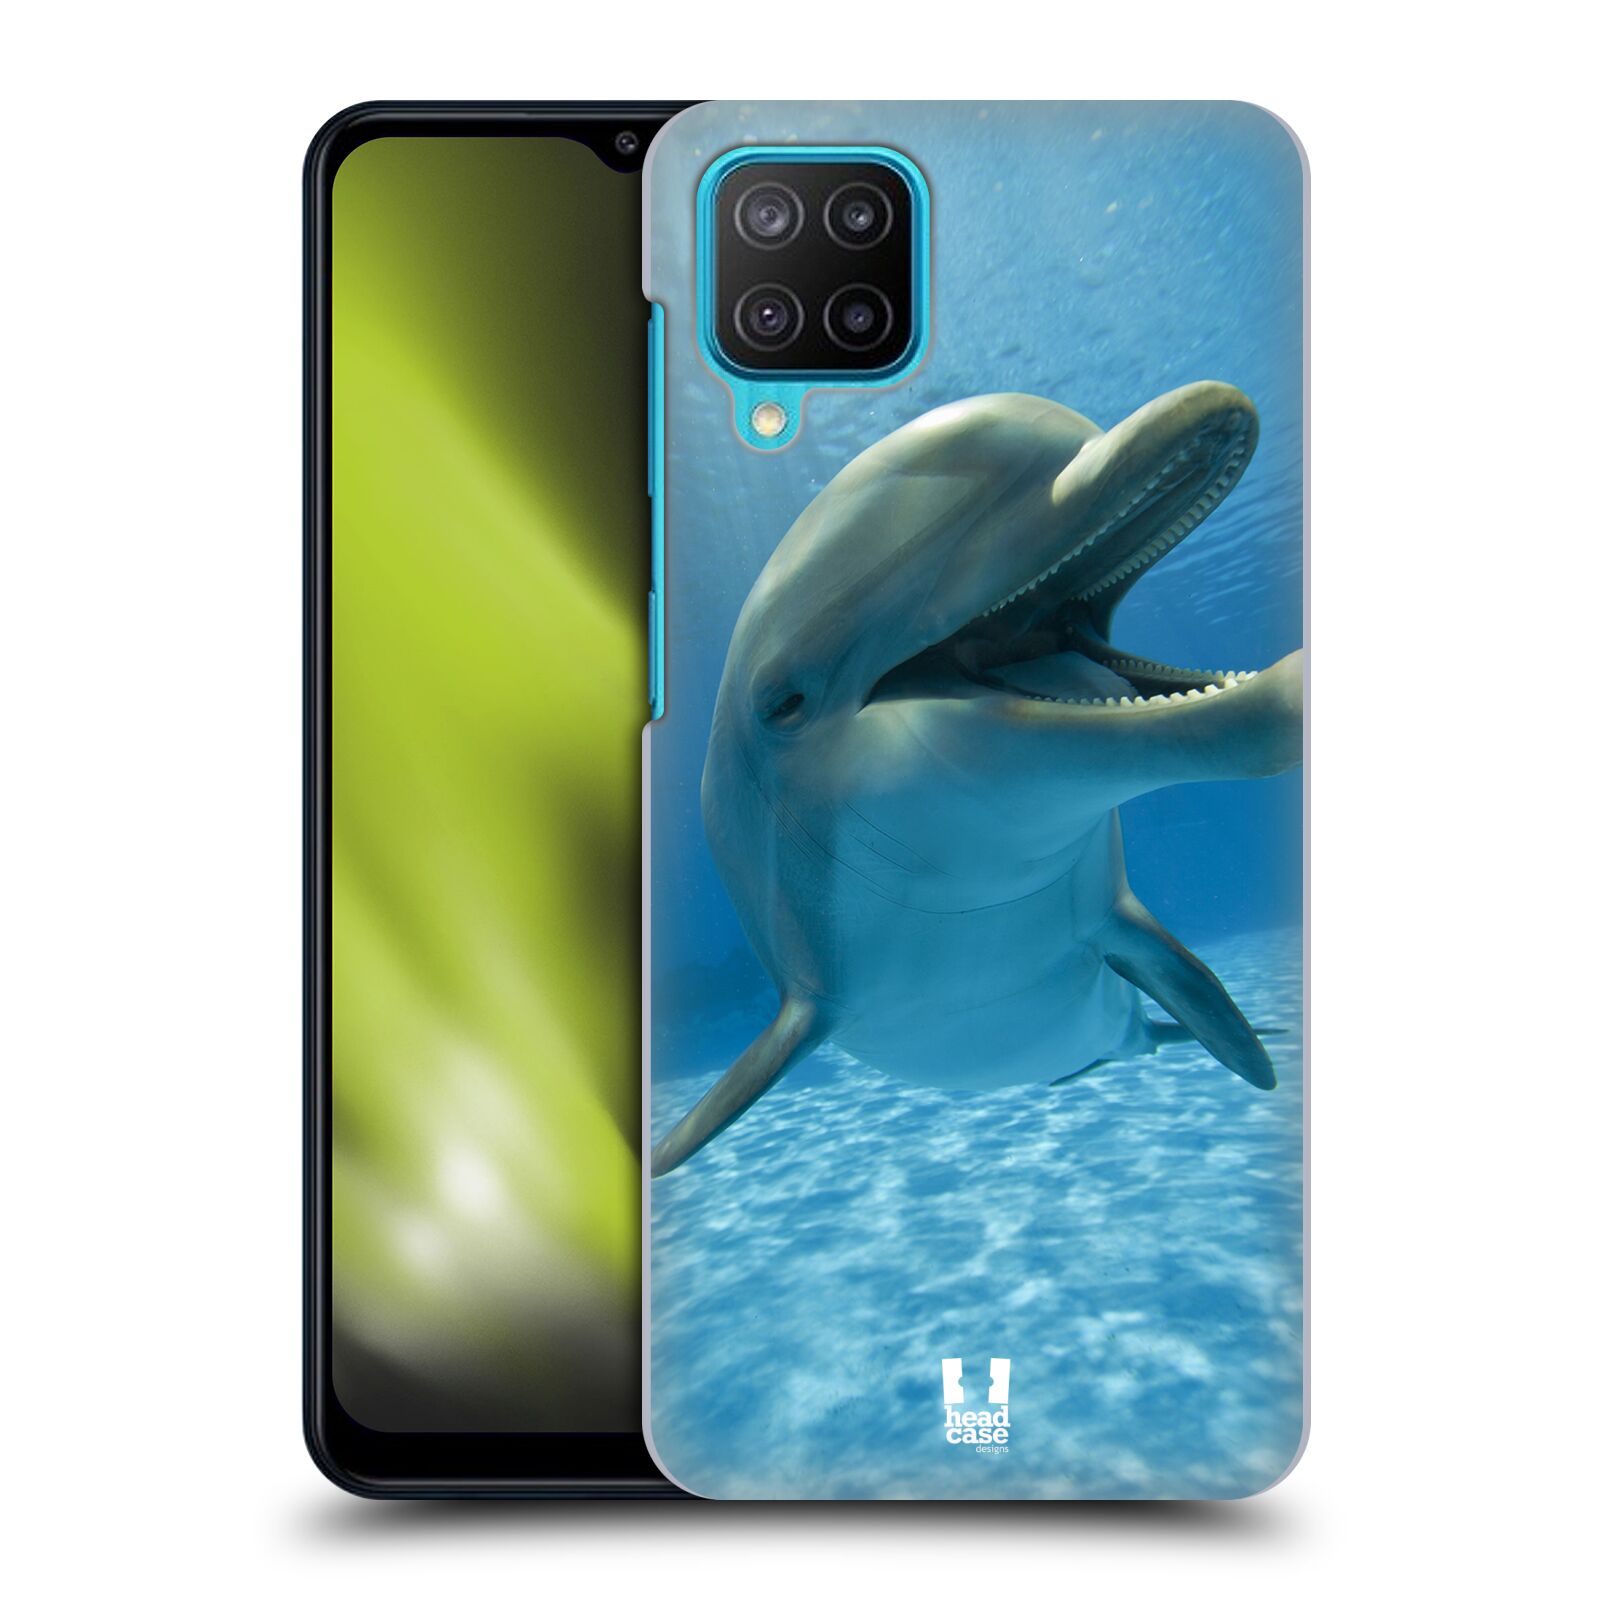 Zadní obal pro mobil Samsung Galaxy M12 - HEAD CASE - Svět zvířat delfín v moři